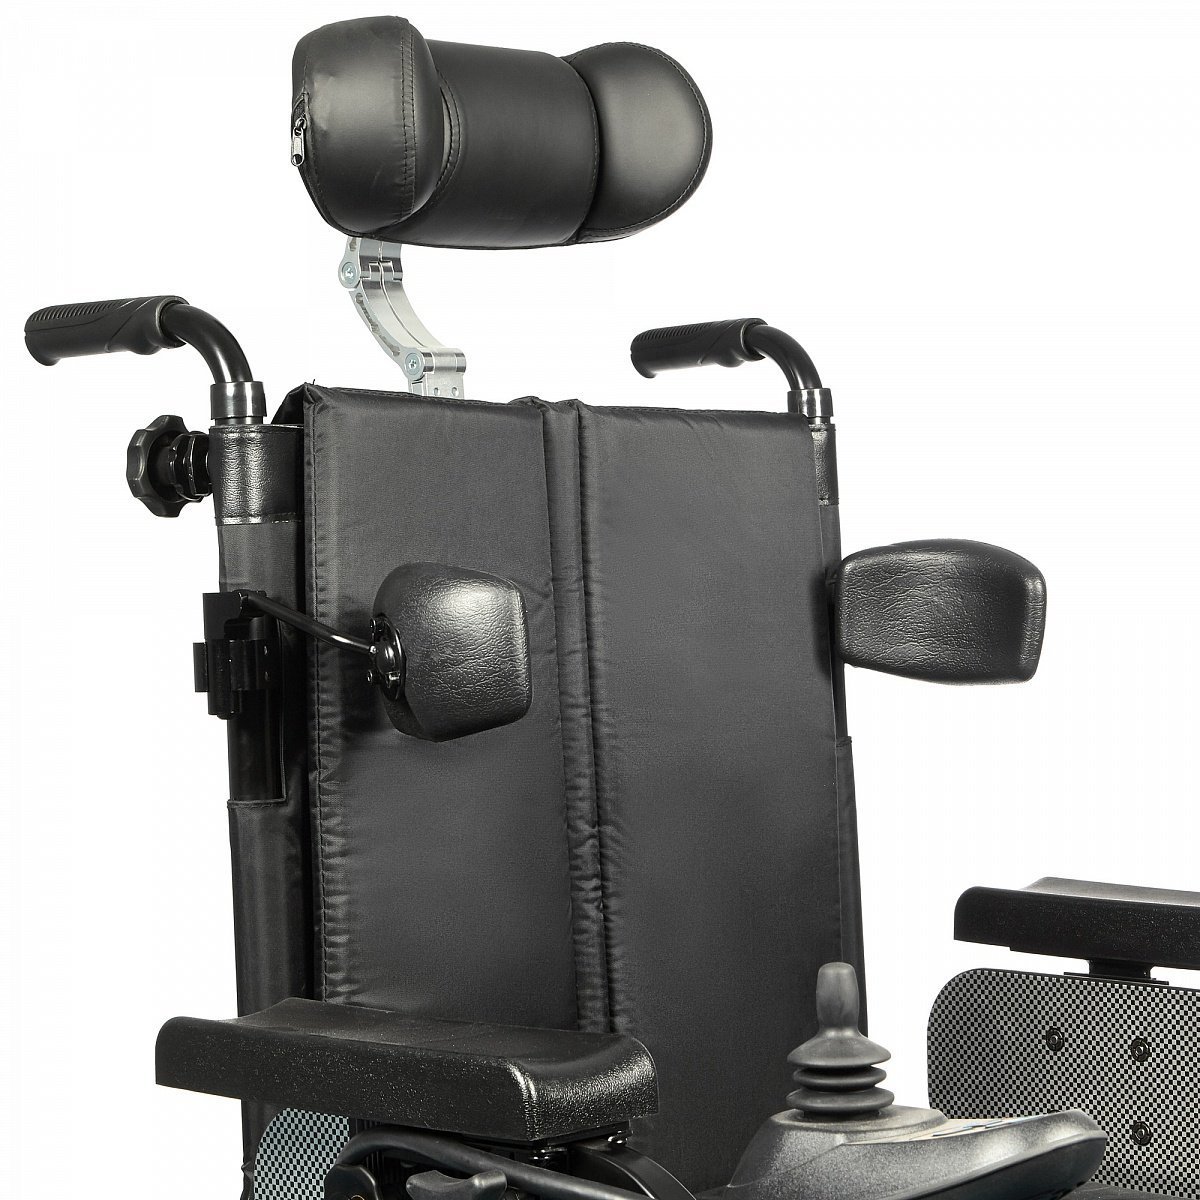 Коляска инвалидная с электроприводом Ortonica Pulse 170 предназначена для самостоятельного передвижения (в помещениях и на дорогах с твердым покрытием) инвалидов с заболеваниями опорно-двигательного аппарата и повреждениями нижних конечностей